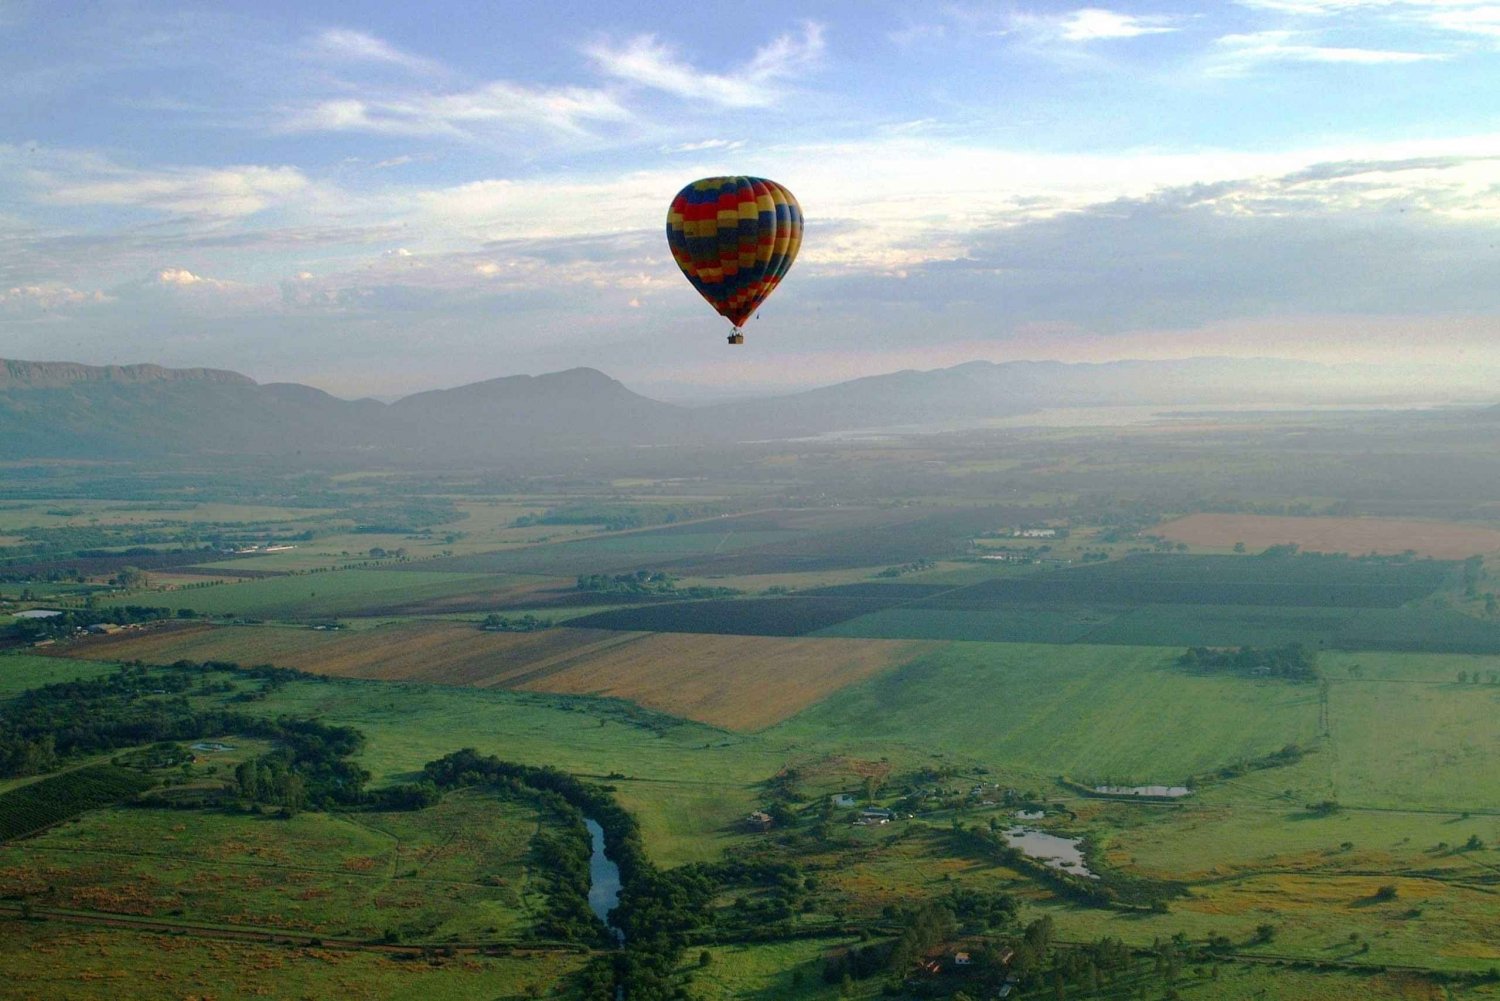 Johannesburg: Lot balonem na ogrzane powietrze wzdłuż doliny Magalies